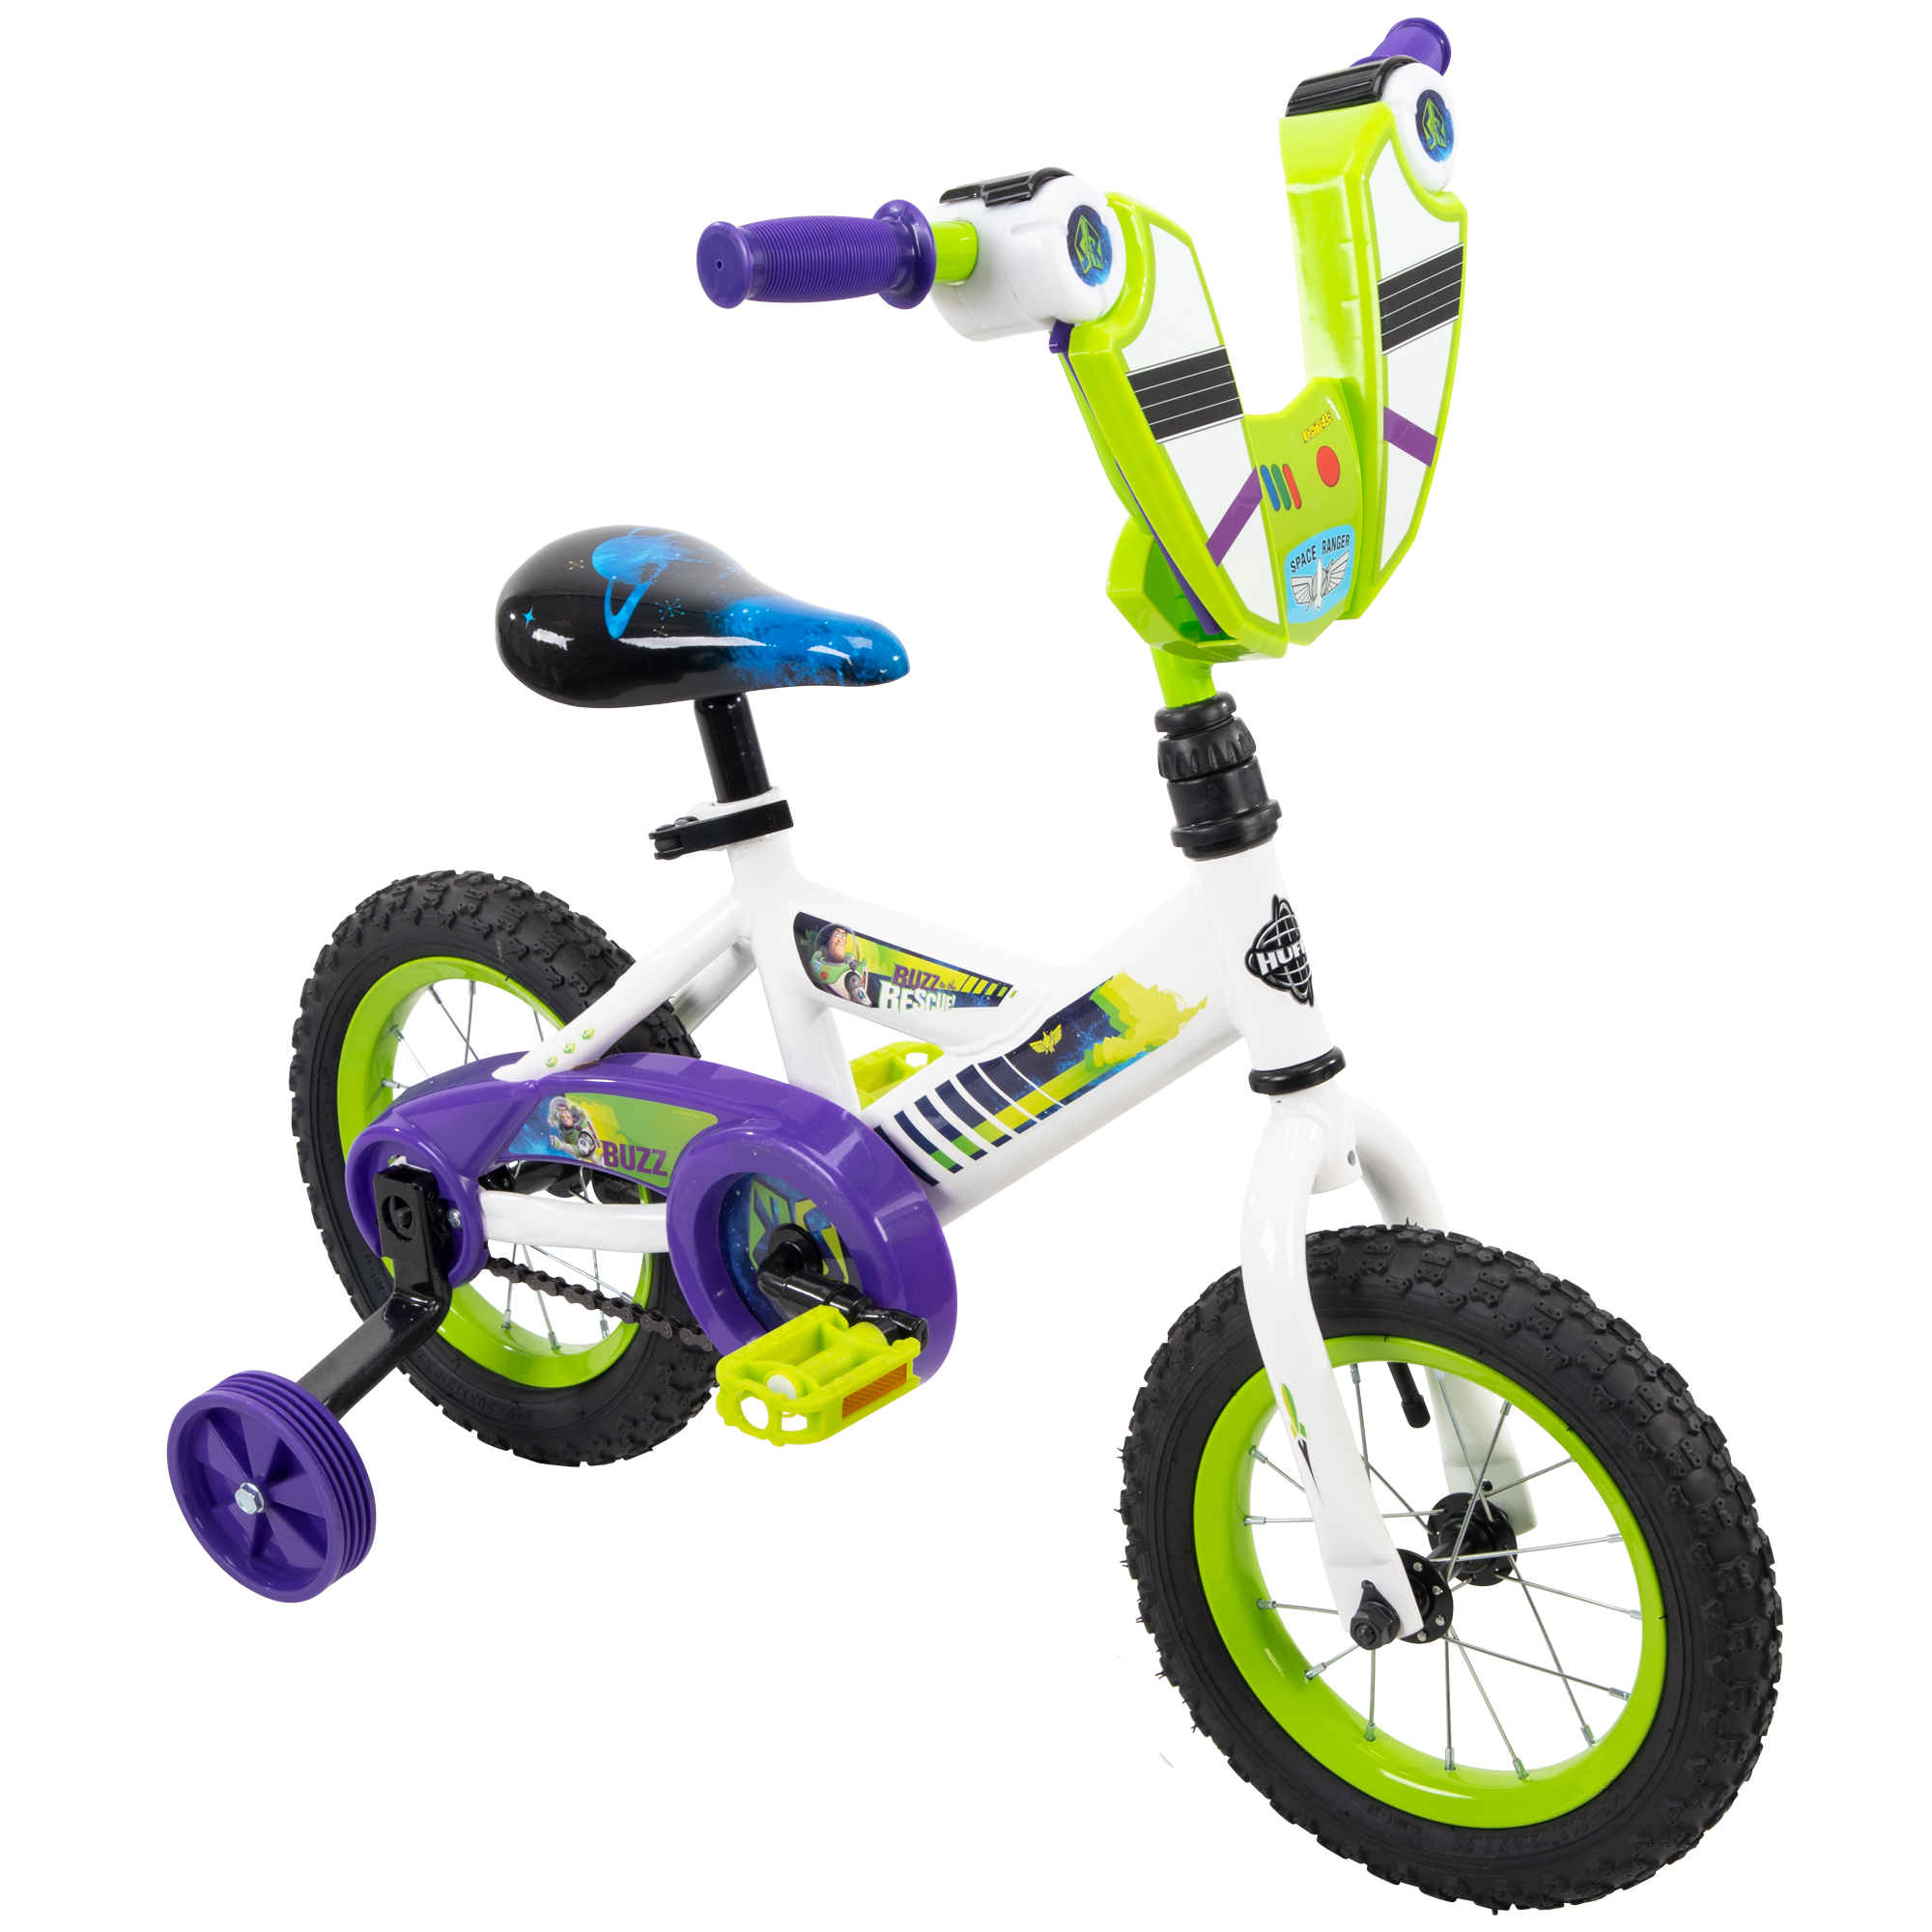 Disney Pixar Toy Story Buzz Lightyear 12\" EZ Build Bike by Huffy